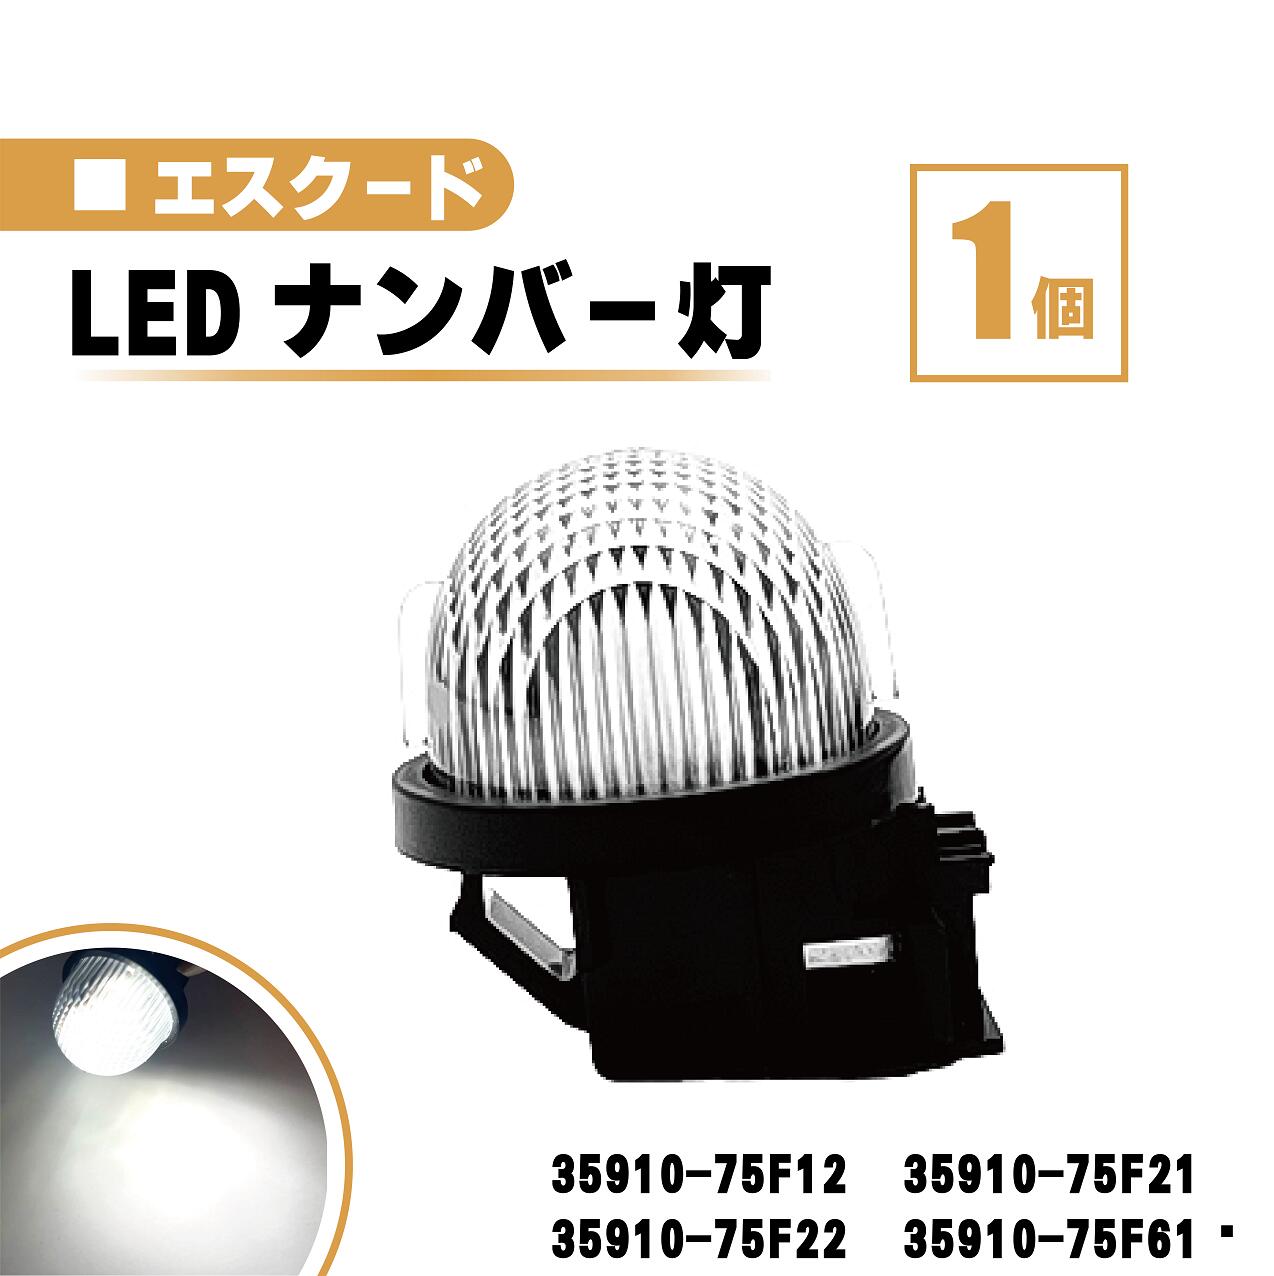 スズキ エスクード LED ナンバー 灯 1個 レンズ 一体型 リア ライセンスプレート ランプ ライト 白 TA02 TD02 TD32 TA52 TD52 TL52 TD54 35910-75F12 35910-75F21 35910-75F22 35910-75F61